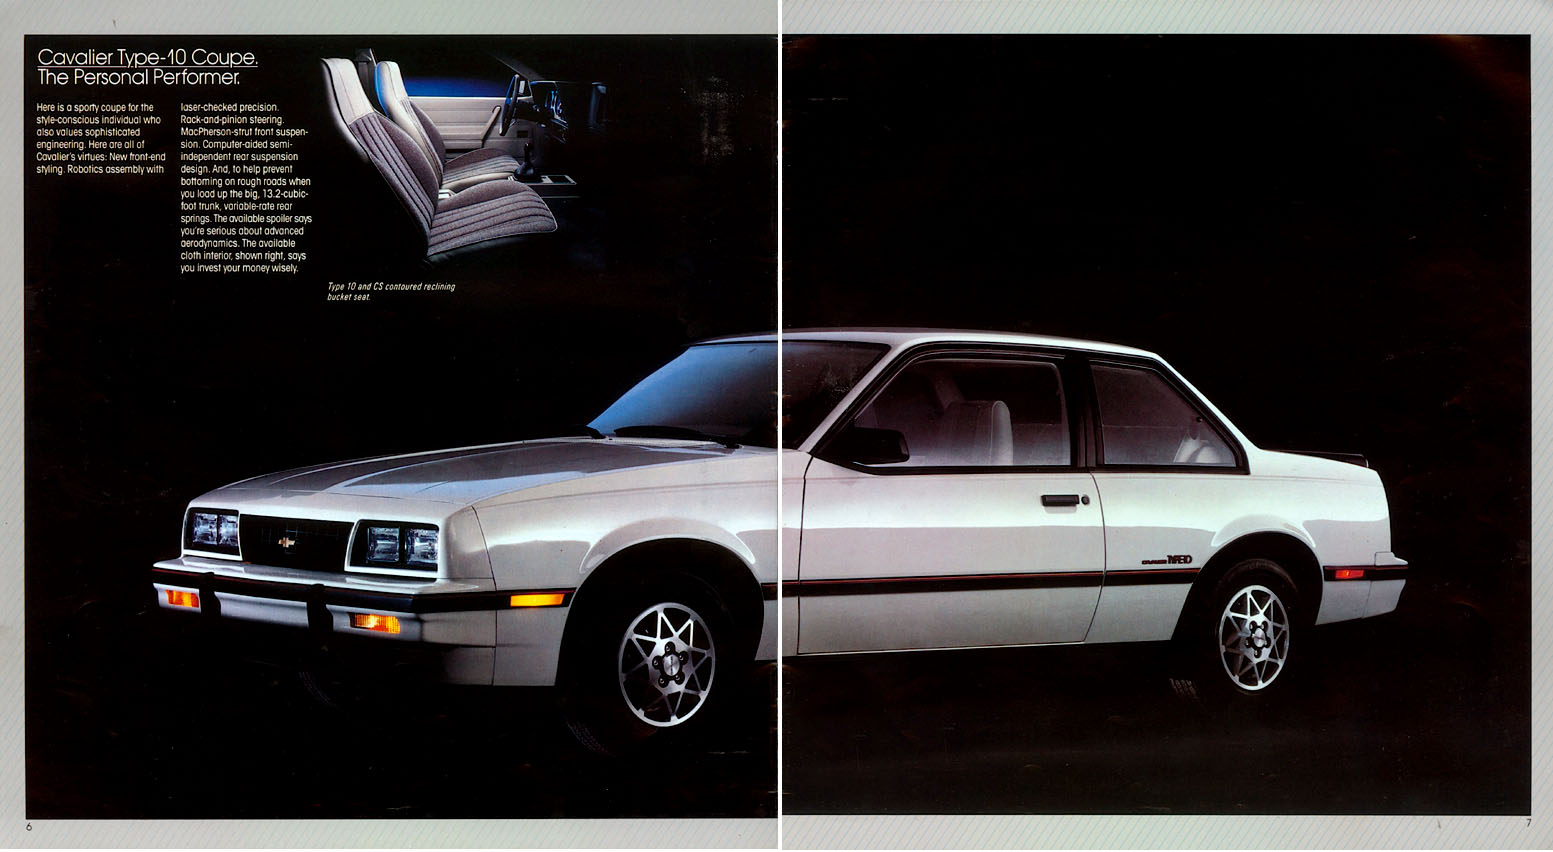 1984 Chevrolet Cavalier Brochure Page 1